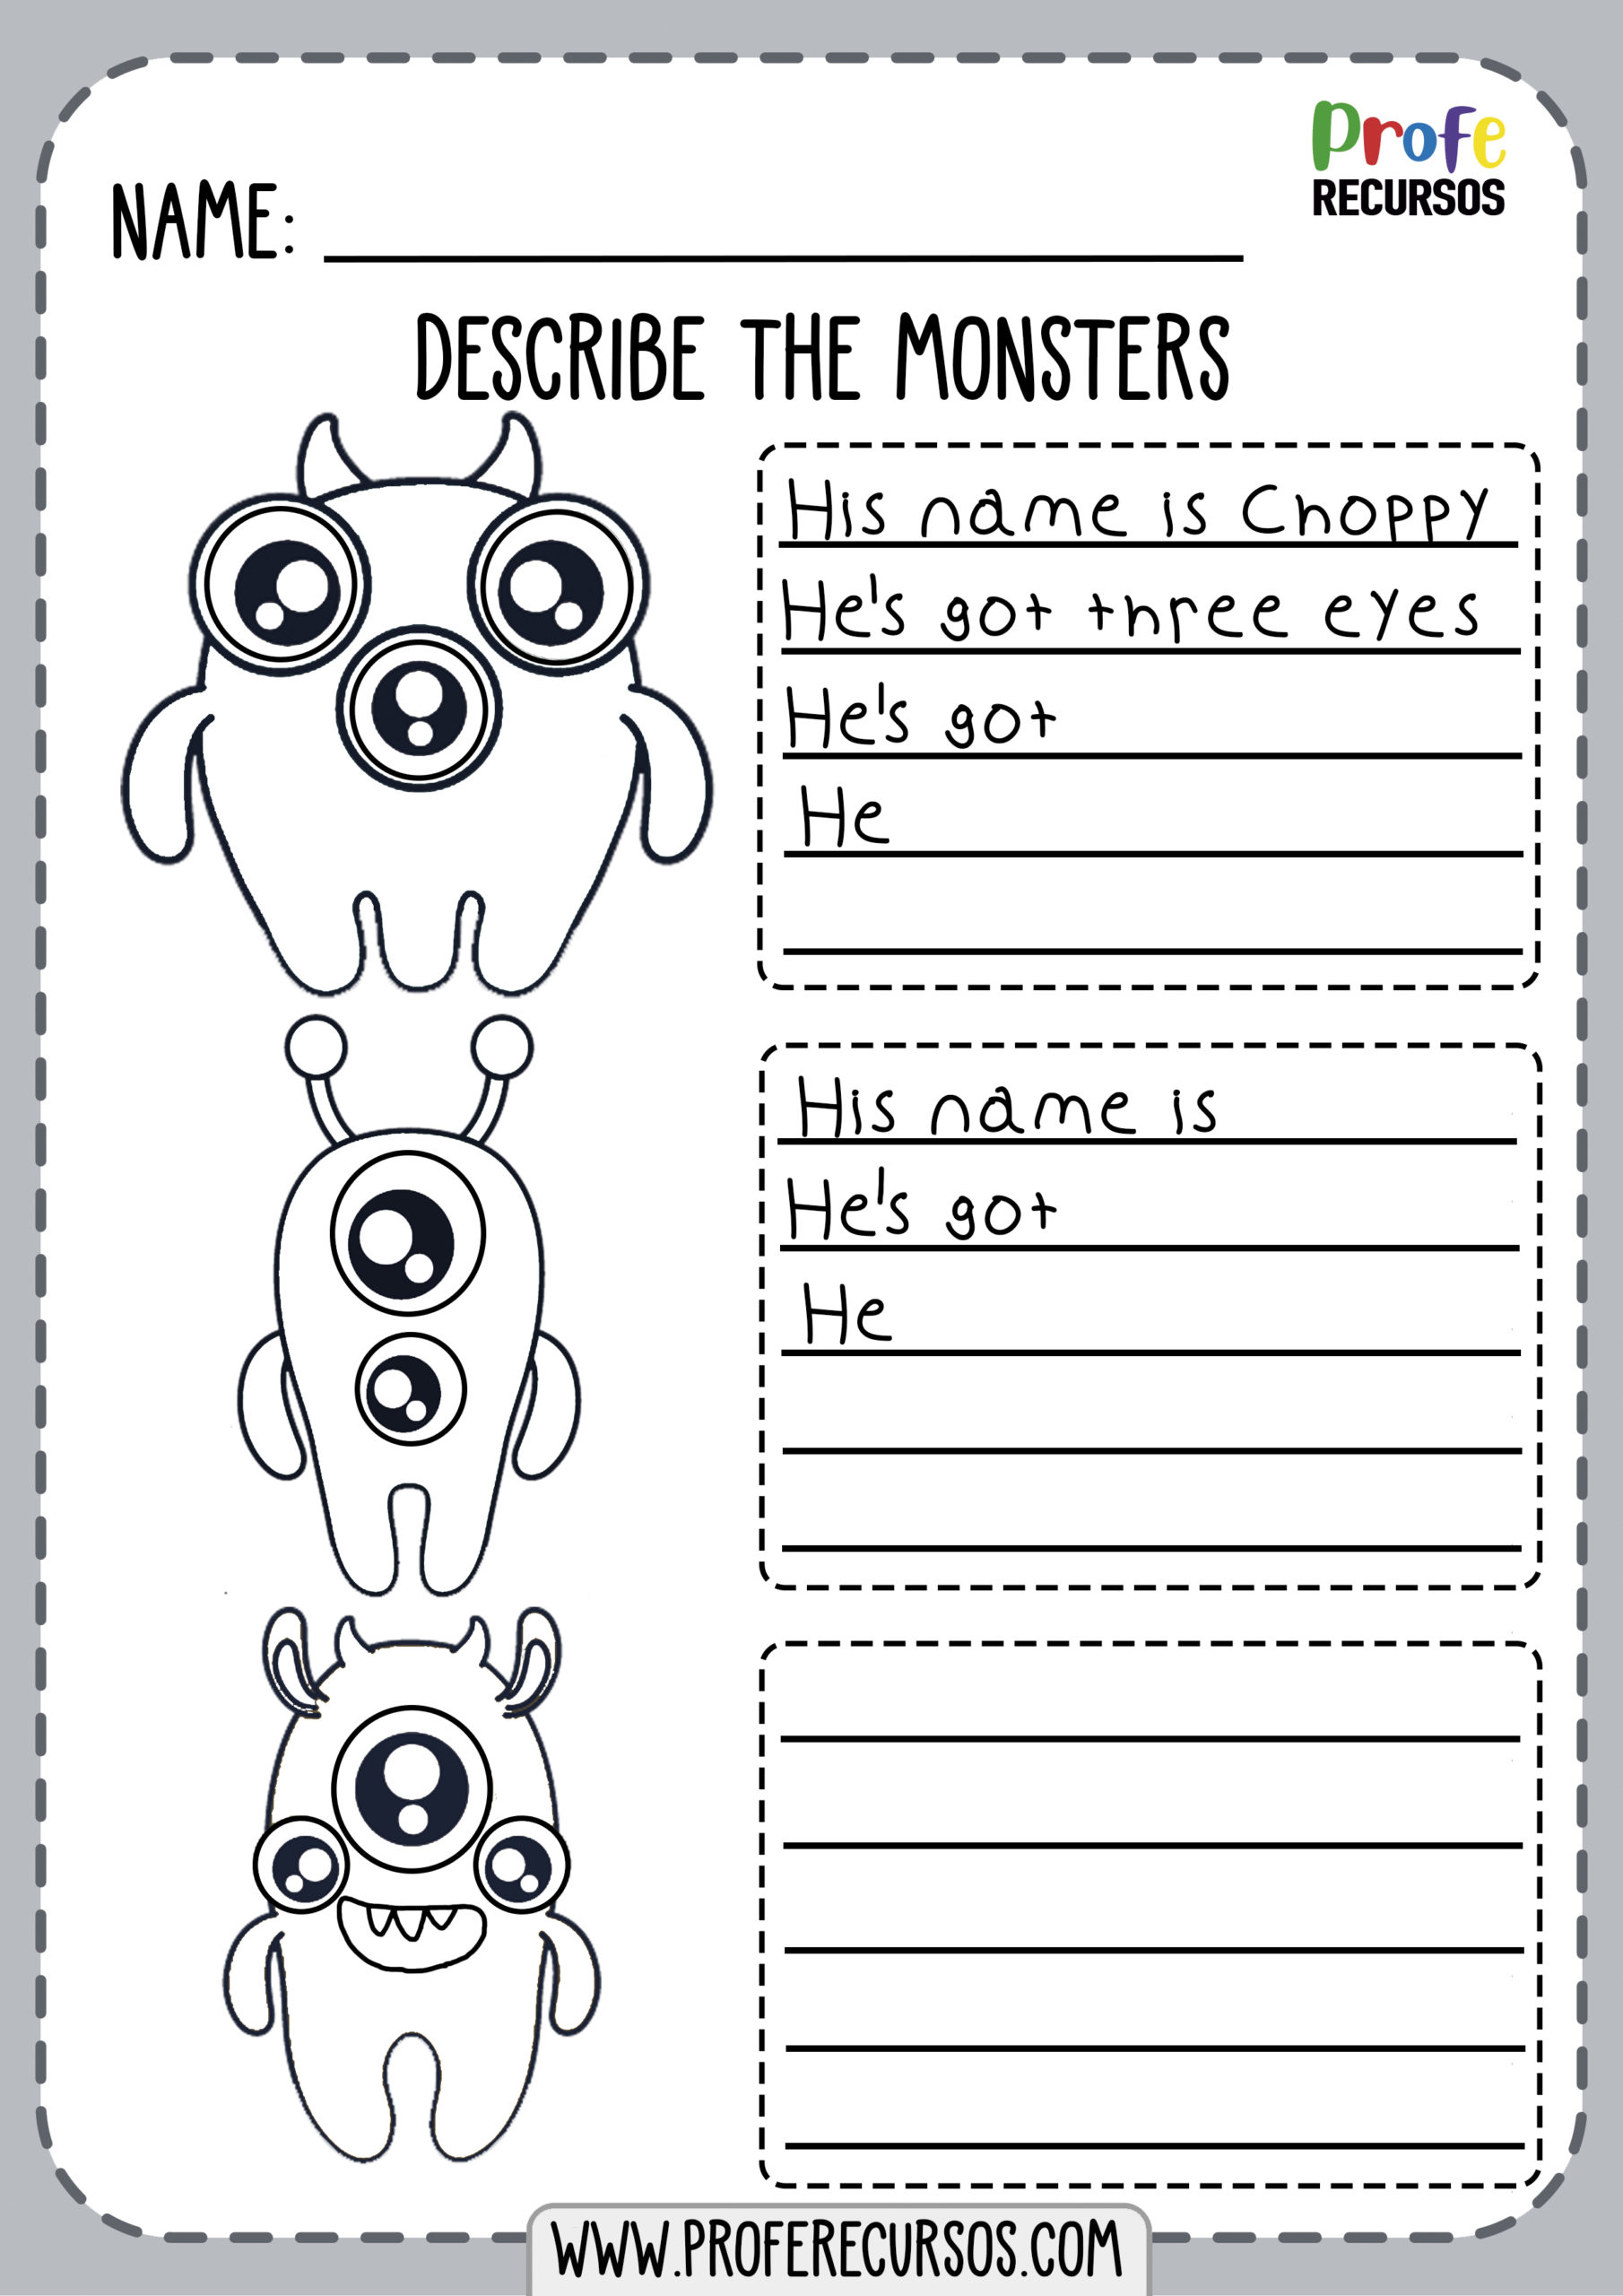 monsters-description